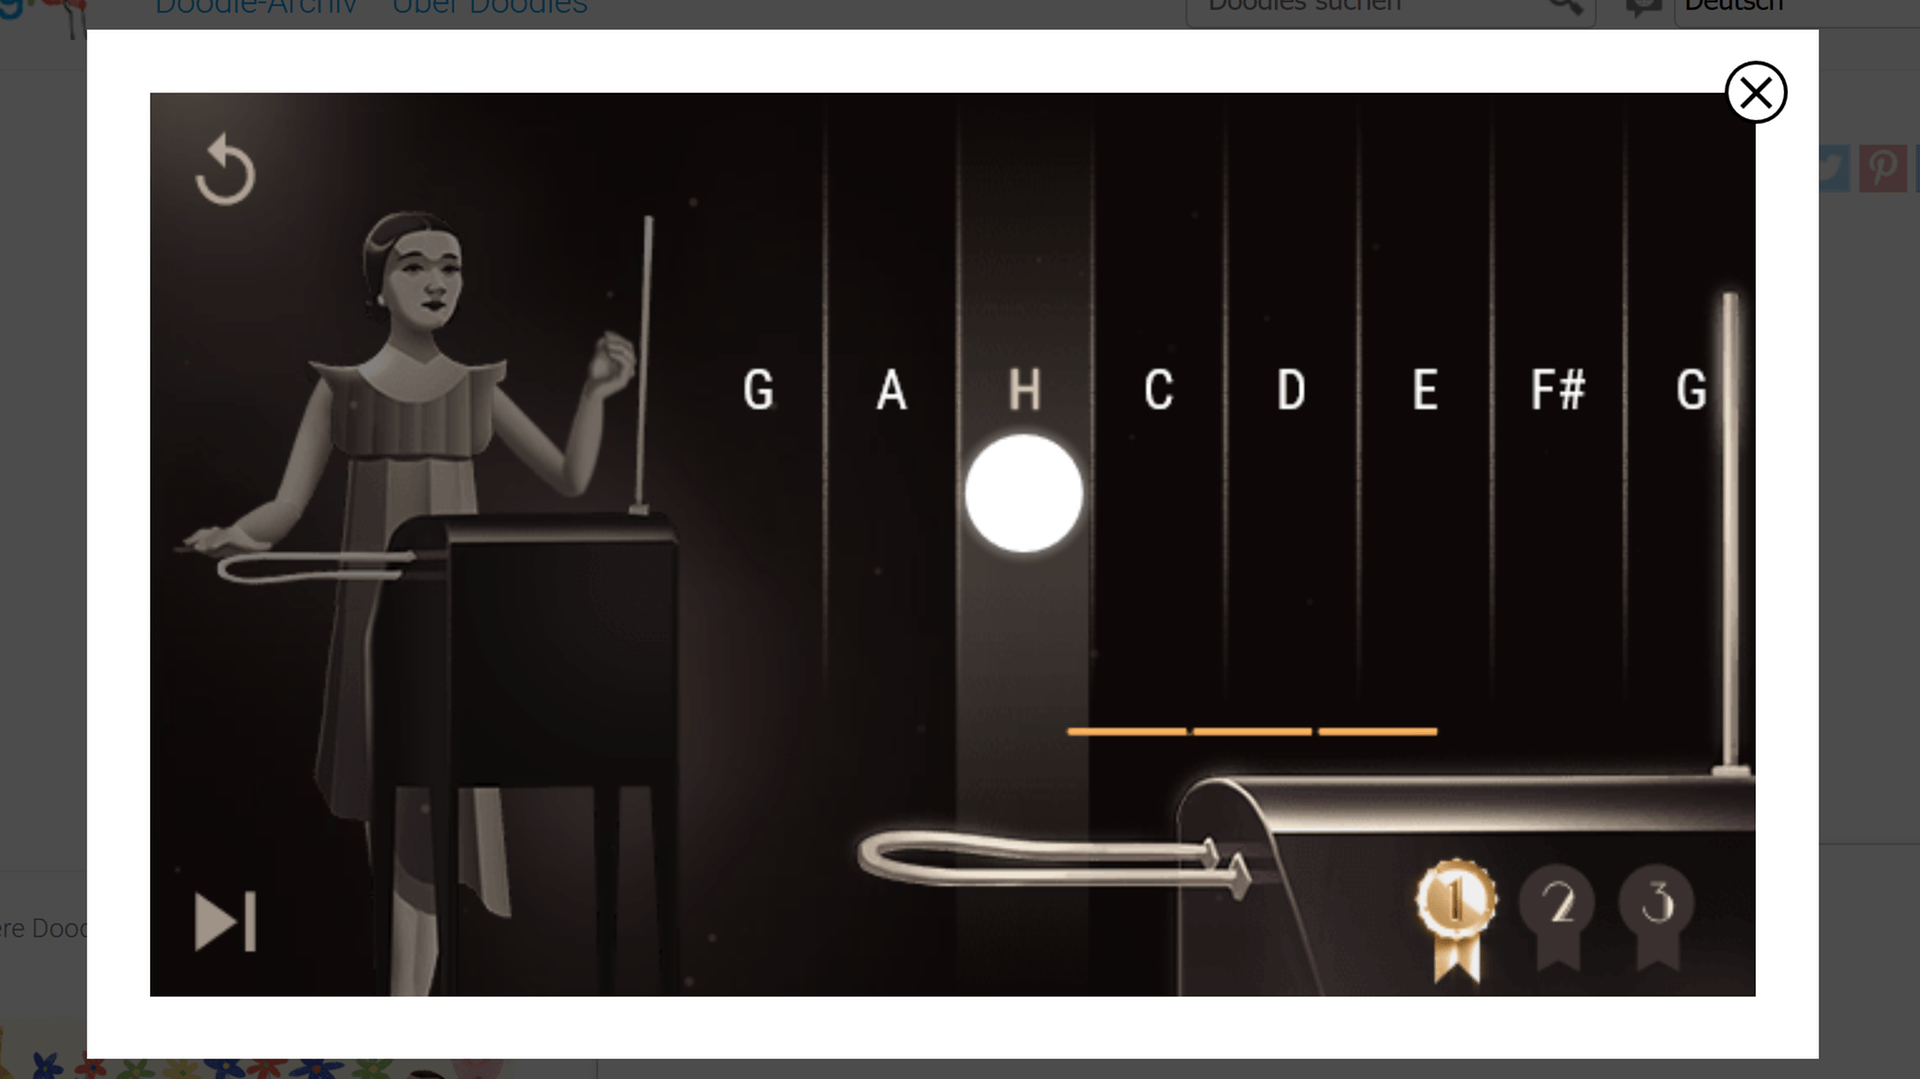 Clara Rockmore war berühmt für ihre Auftritte mit dem Theremin. User können in diesem Doodle das besondere Musikinstrument selbst ausprobieren.